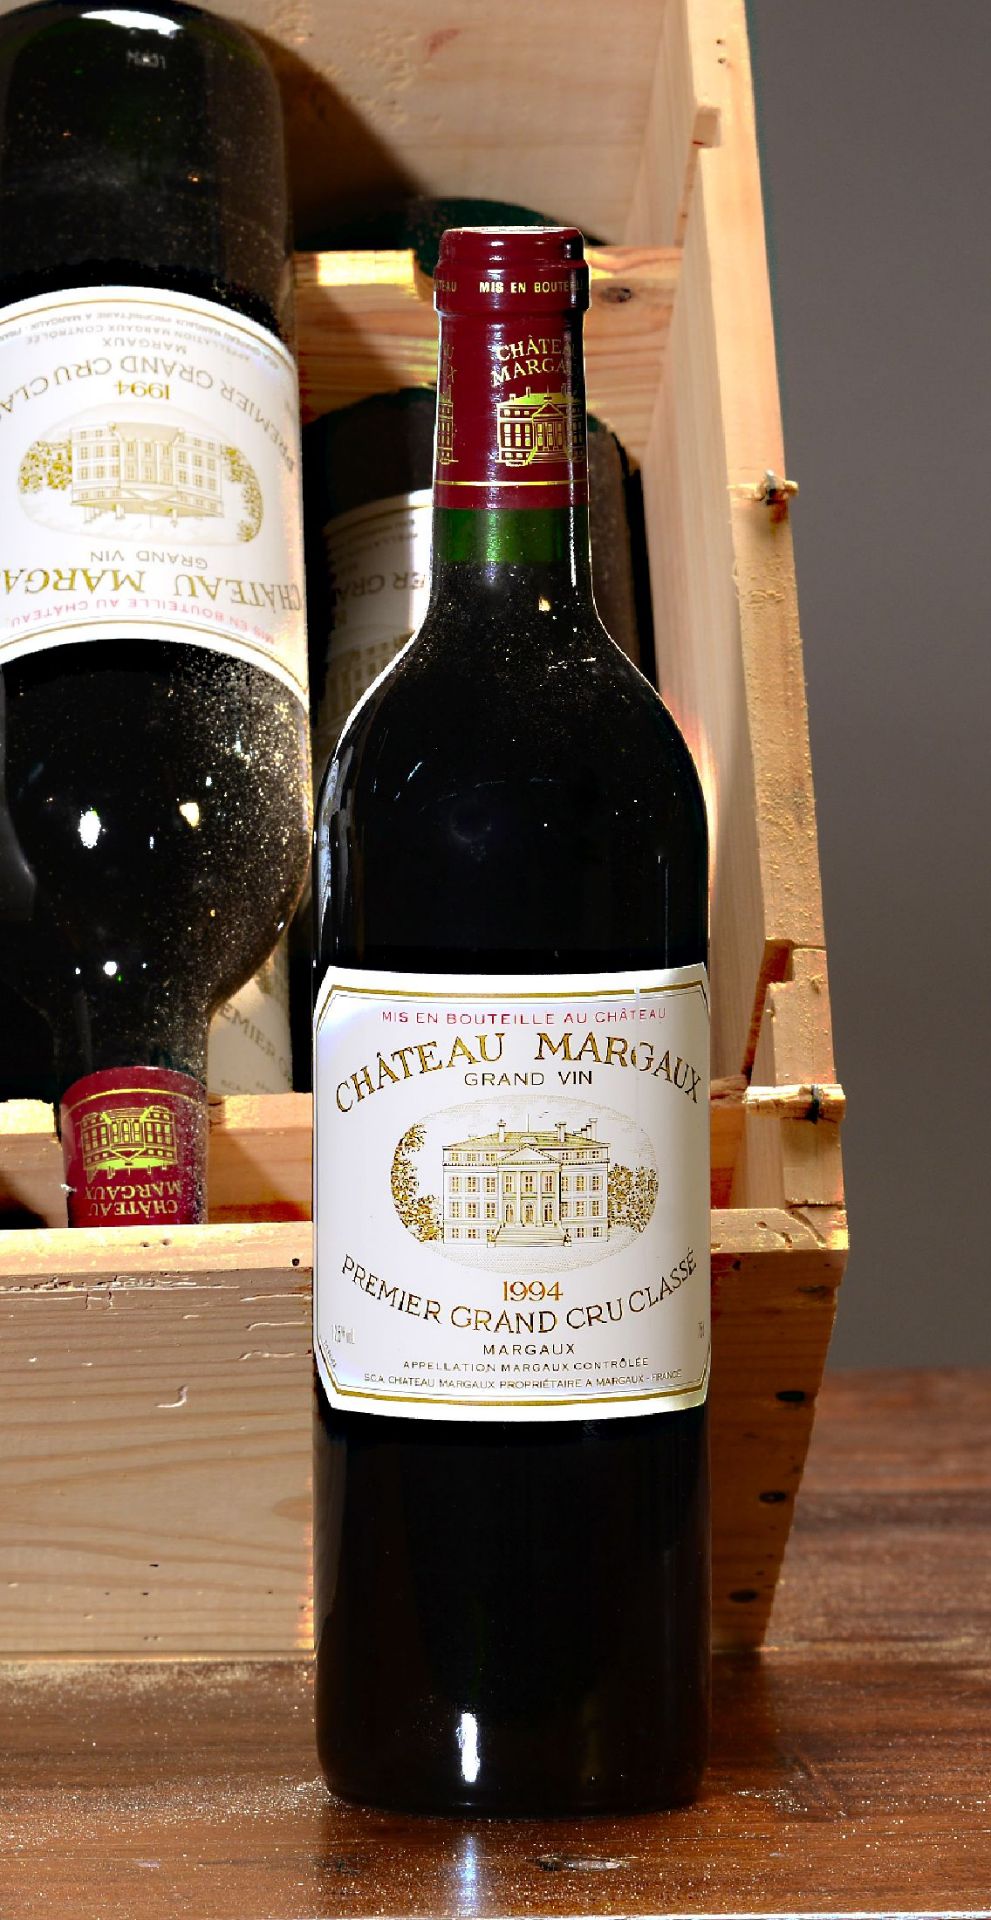 12 Flaschen 1994 Chateau Margaux,  premier grand cru, je - Bild 2 aus 2